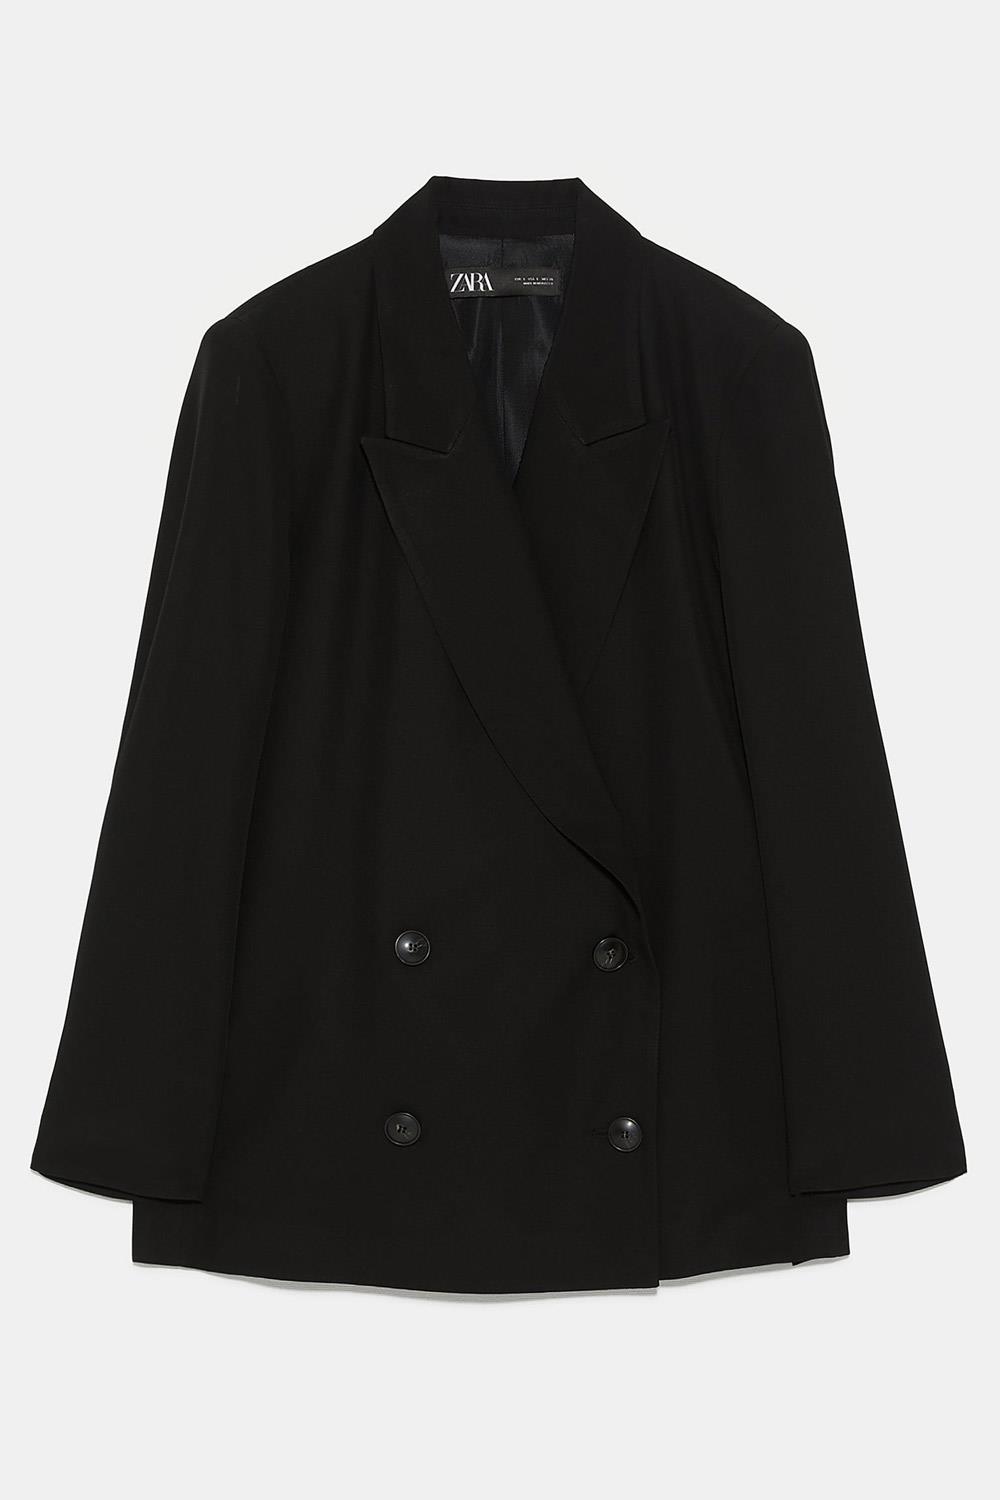 vestido de fiesta traje de chaqueta mujer blazer Zara, 49,95€